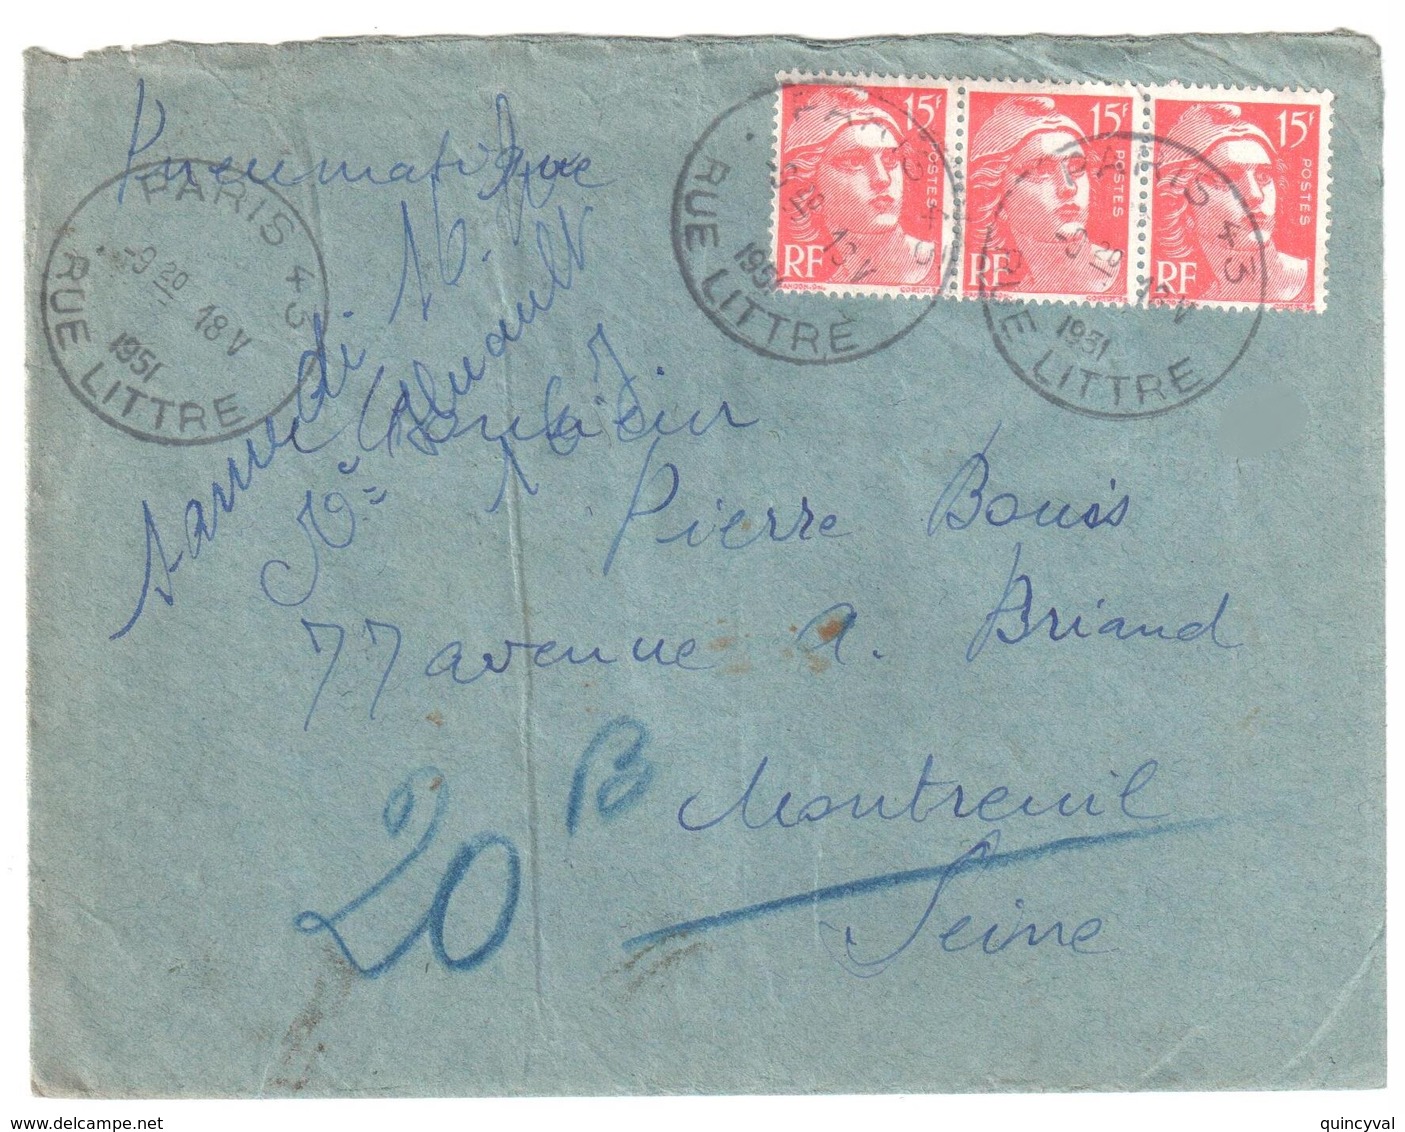 PARIS 43 Rue Littré Pneumatique Dest Montreuil Sous Bois 15F Gandon Rouge Yv 813 Ob 3 4 1951 - Covers & Documents